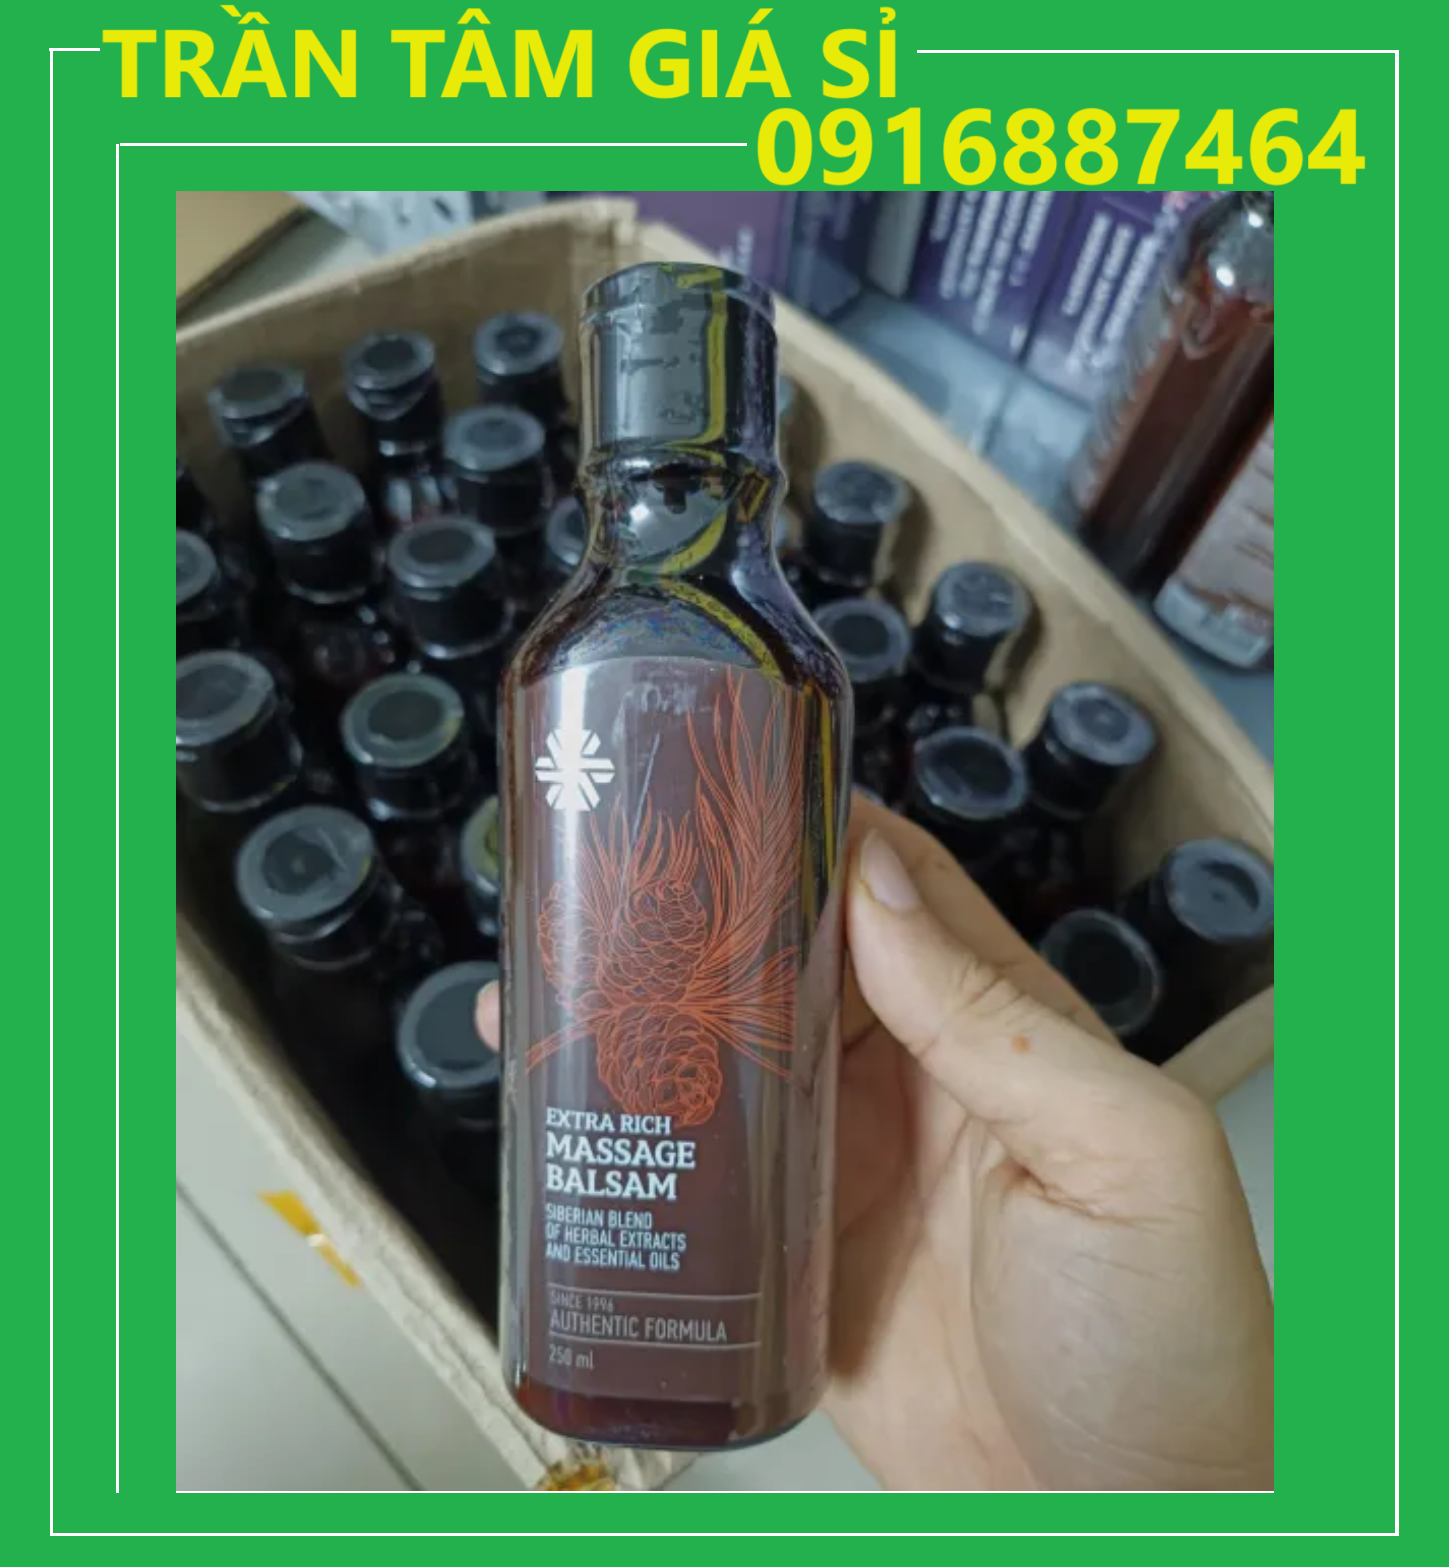 Dầu massage Balsam - Dầu thơm Siberian Pure Herbs Collection Extra Rich Massage Balsam - Siberian Wellness - 250ml